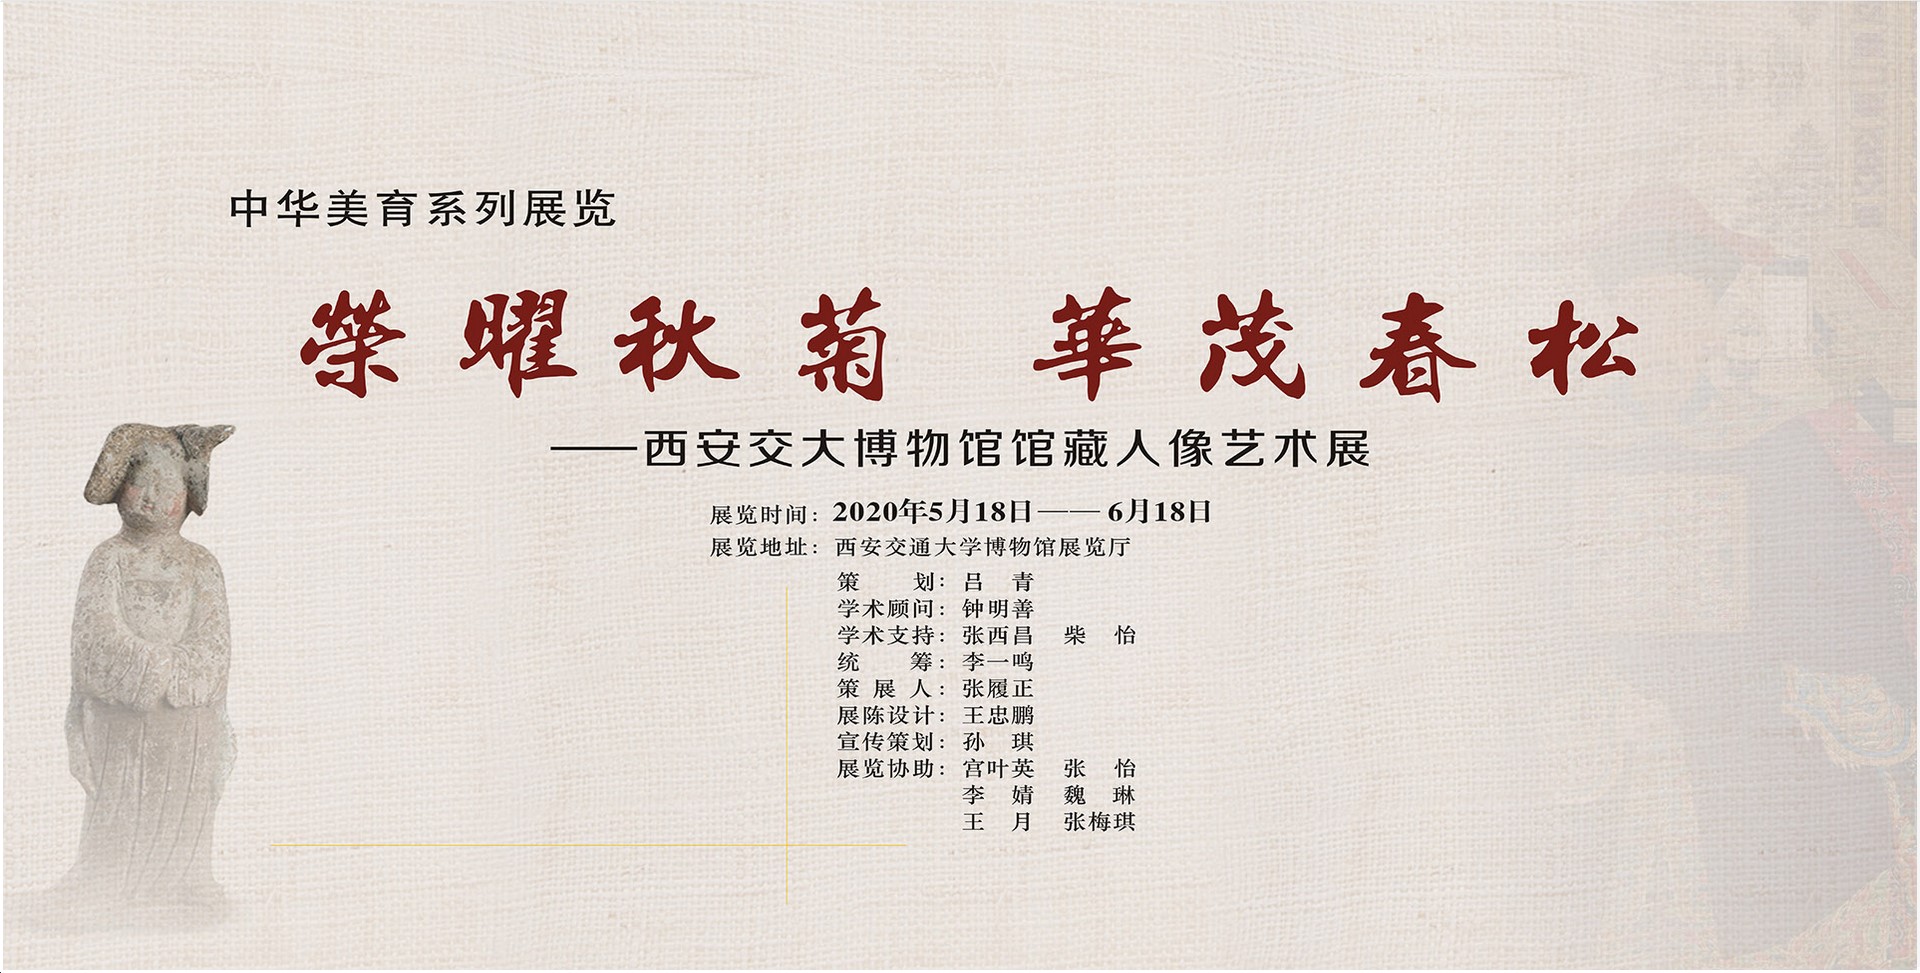 中华美育系列展览-西安交通大学博物馆馆藏人像艺术展